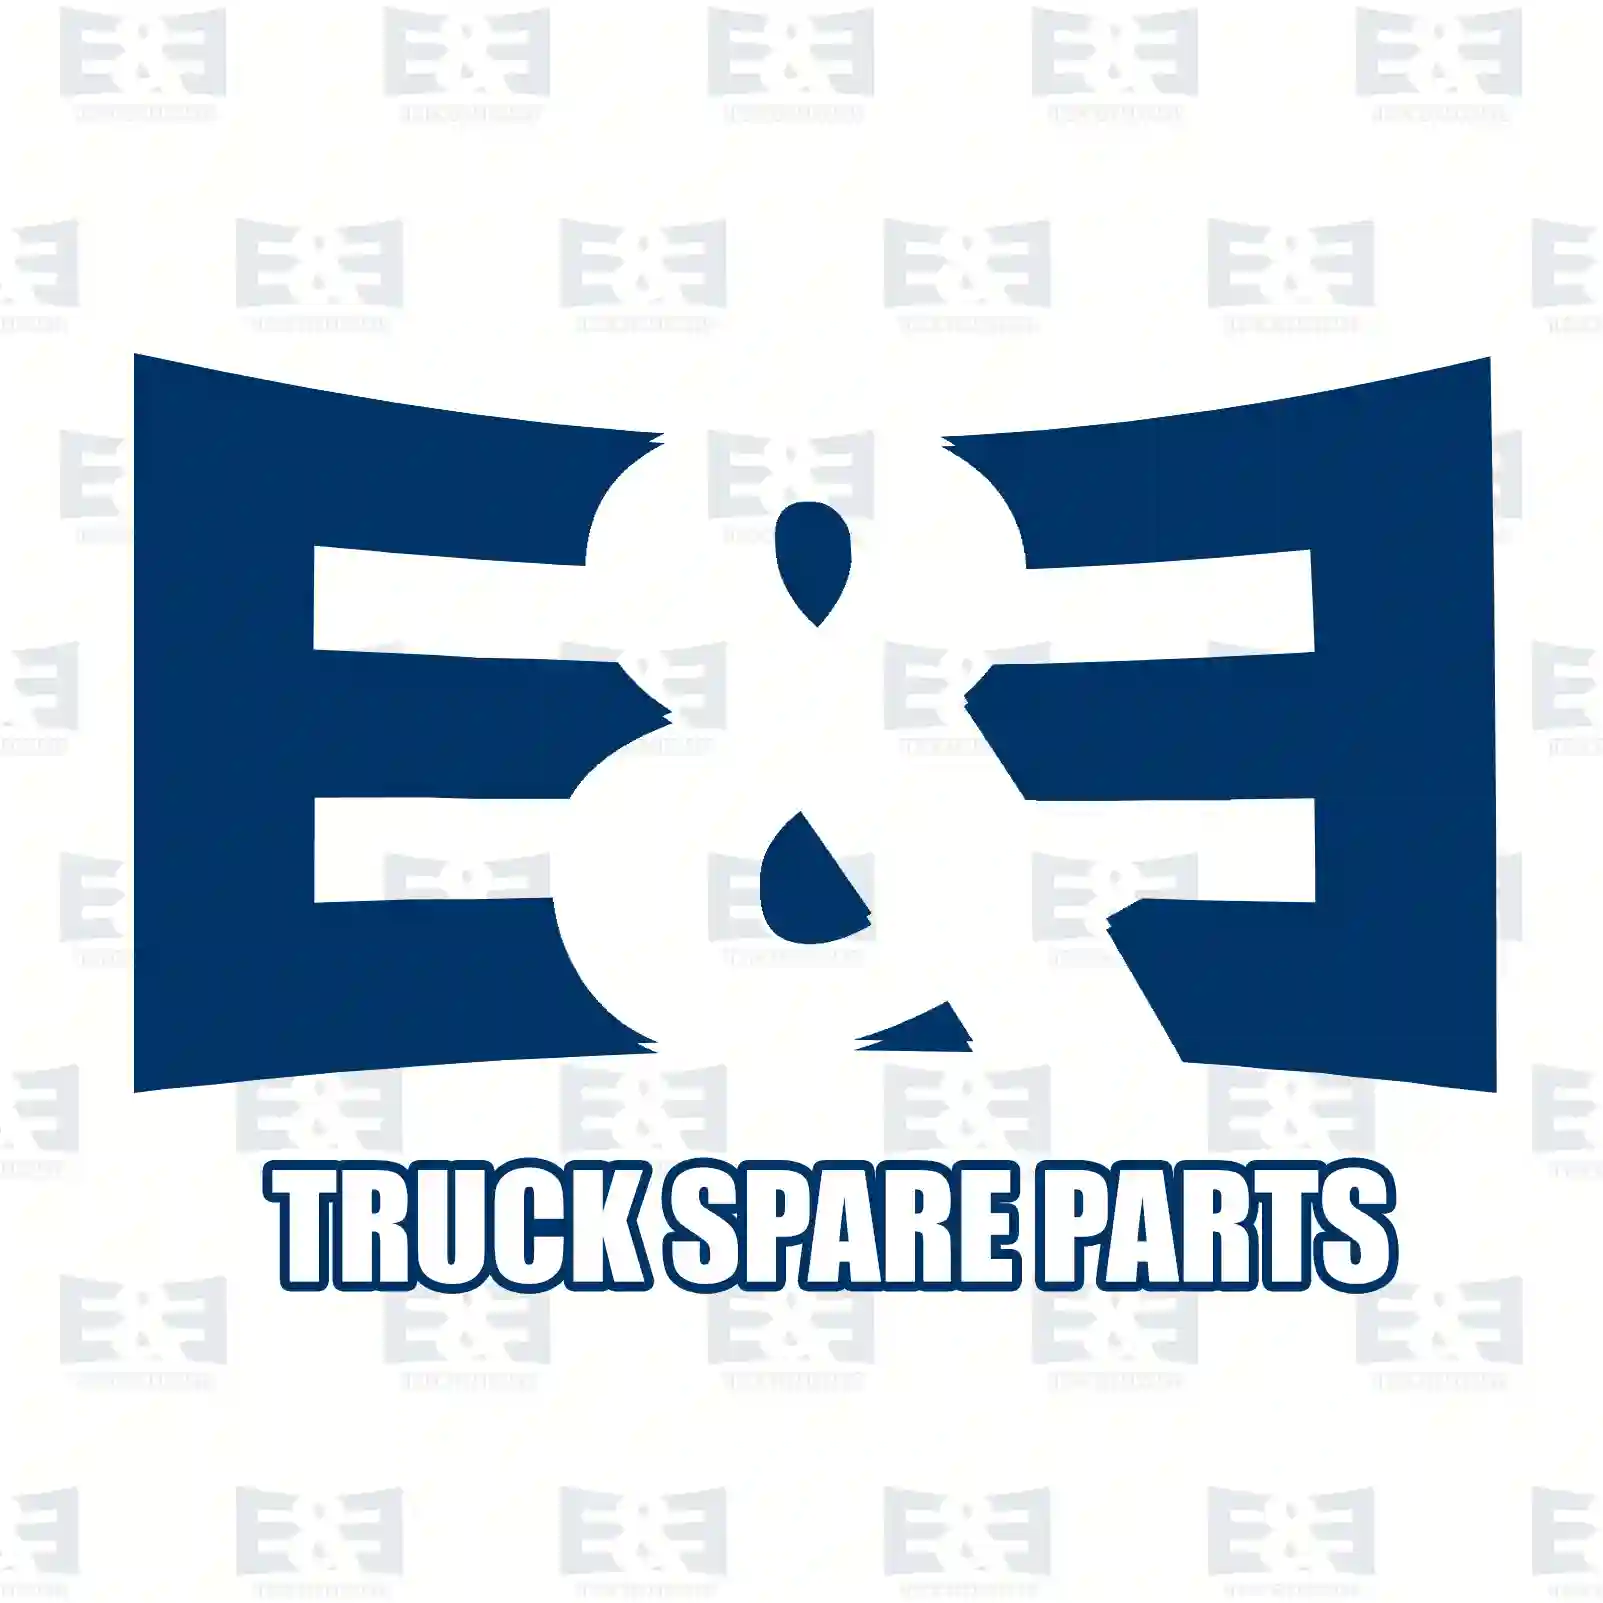 Brake camshaft, right, 2E2296184, 64503010003, 81503010112, 81503010262, 81503010264, 81503010268, 81503010270, 3464231236, 6234230236, 2V5609820, ZG50178-0008 ||  2E2296184 E&E Truck Spare Parts | Truck Spare Parts, Auotomotive Spare Parts Brake camshaft, right, 2E2296184, 64503010003, 81503010112, 81503010262, 81503010264, 81503010268, 81503010270, 3464231236, 6234230236, 2V5609820, ZG50178-0008 ||  2E2296184 E&E Truck Spare Parts | Truck Spare Parts, Auotomotive Spare Parts